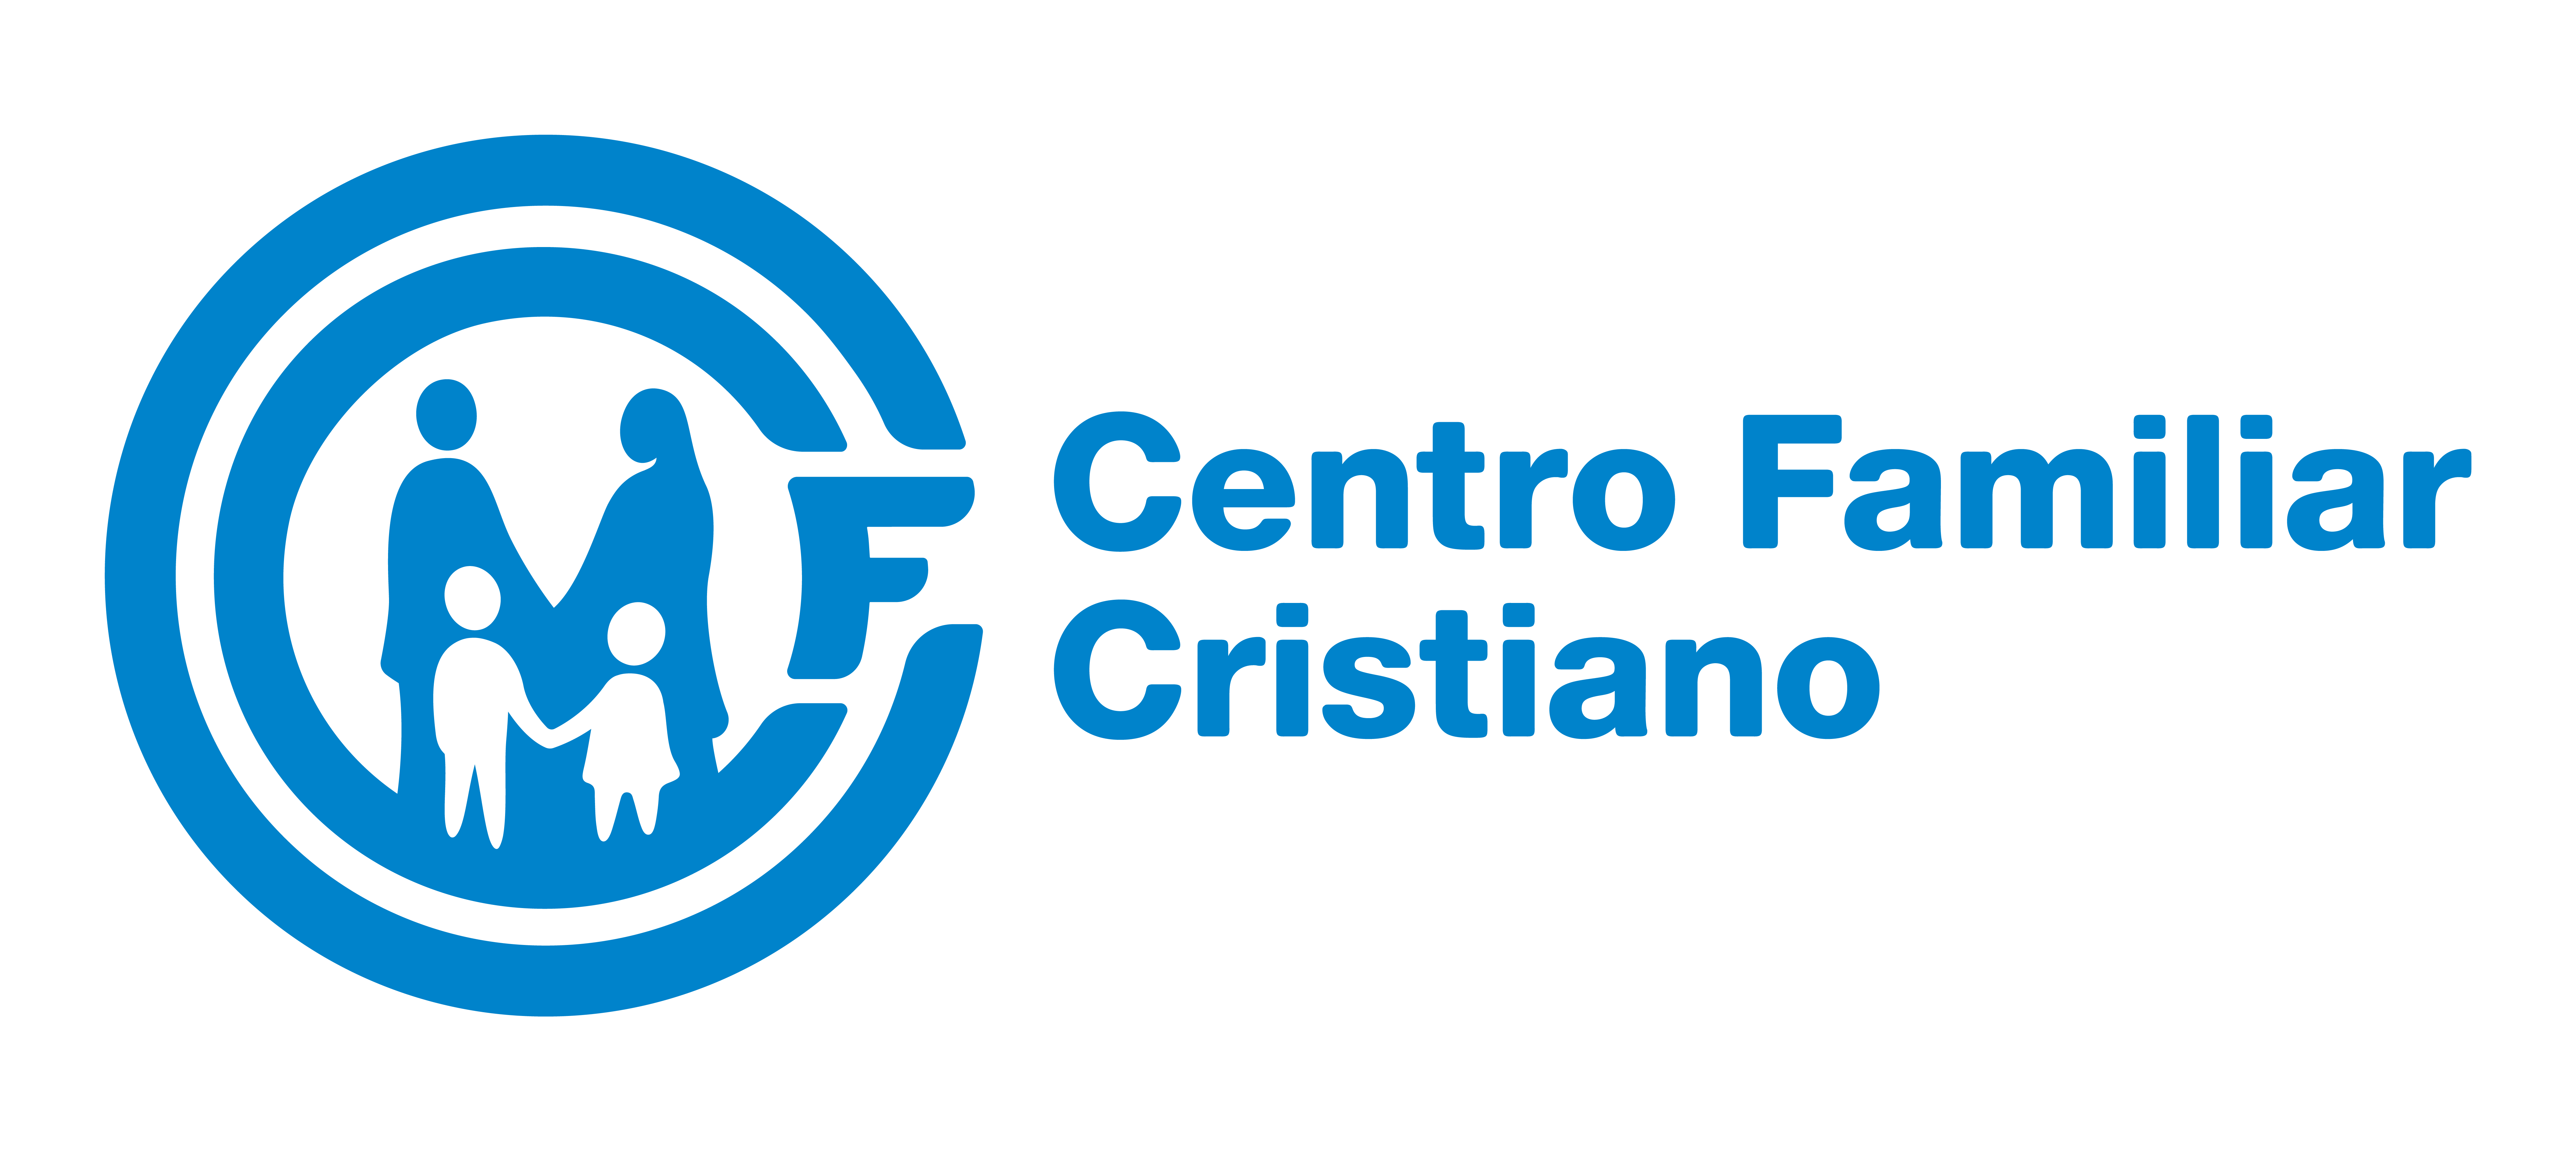 Centro Familiar Cristiano